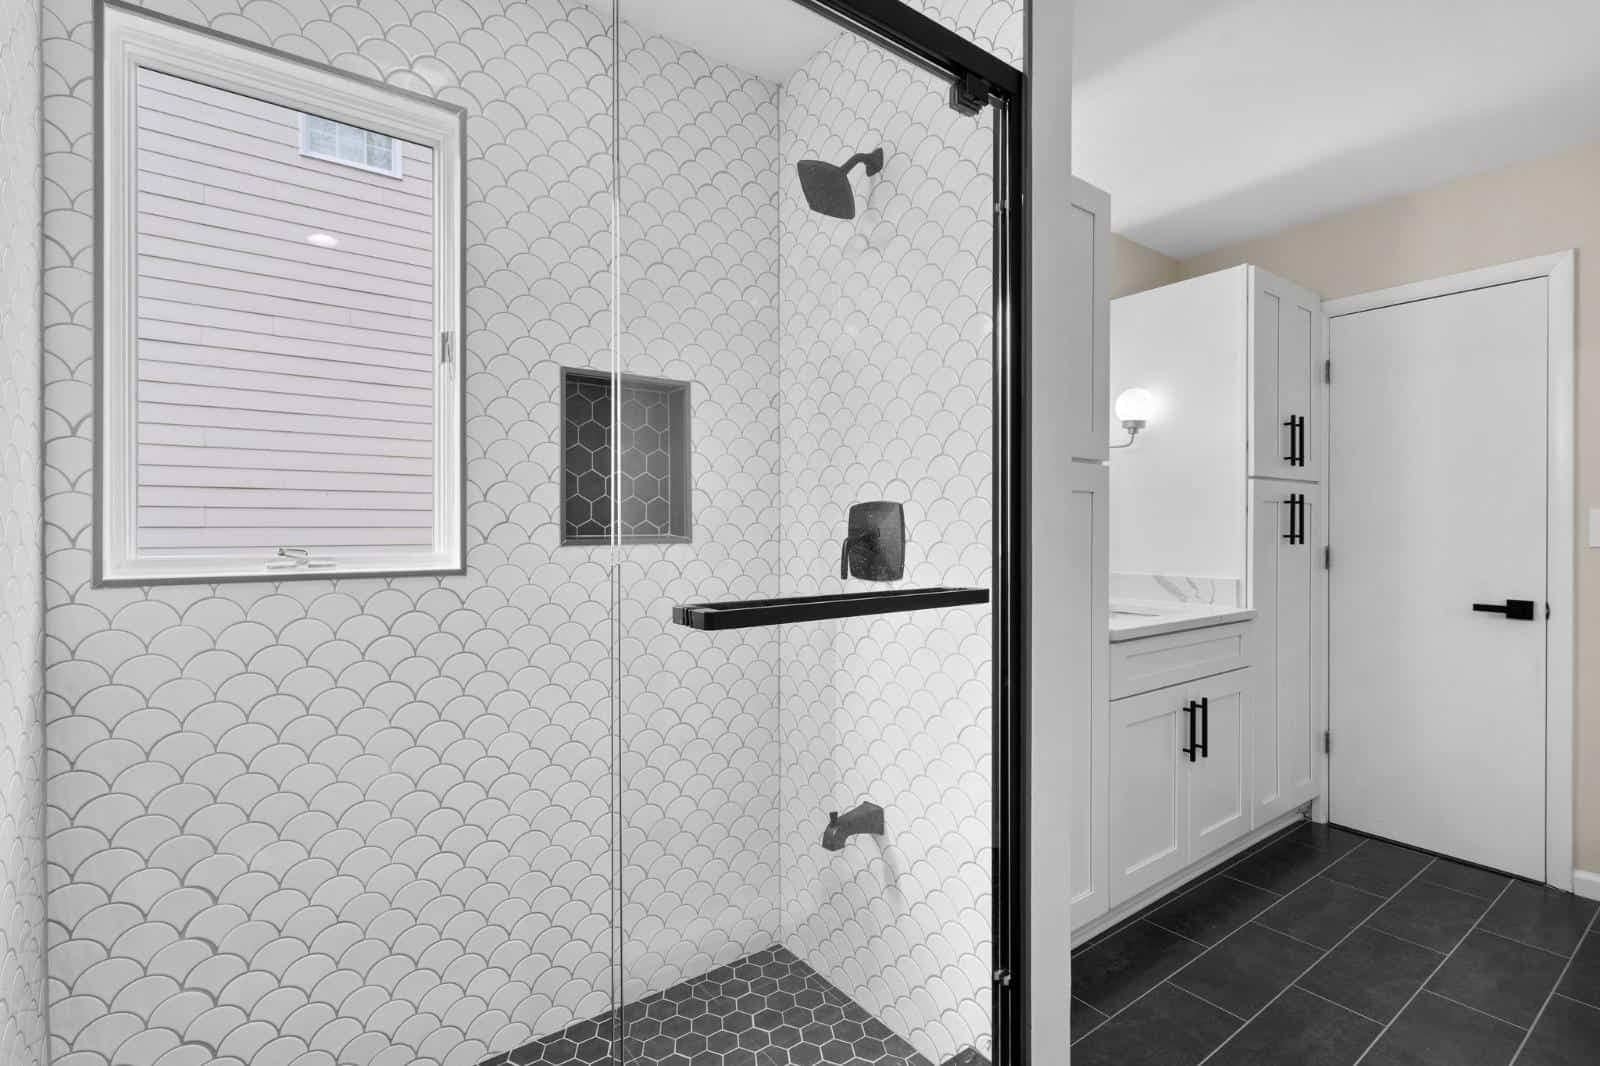 Bathroom remodeling project - Shower